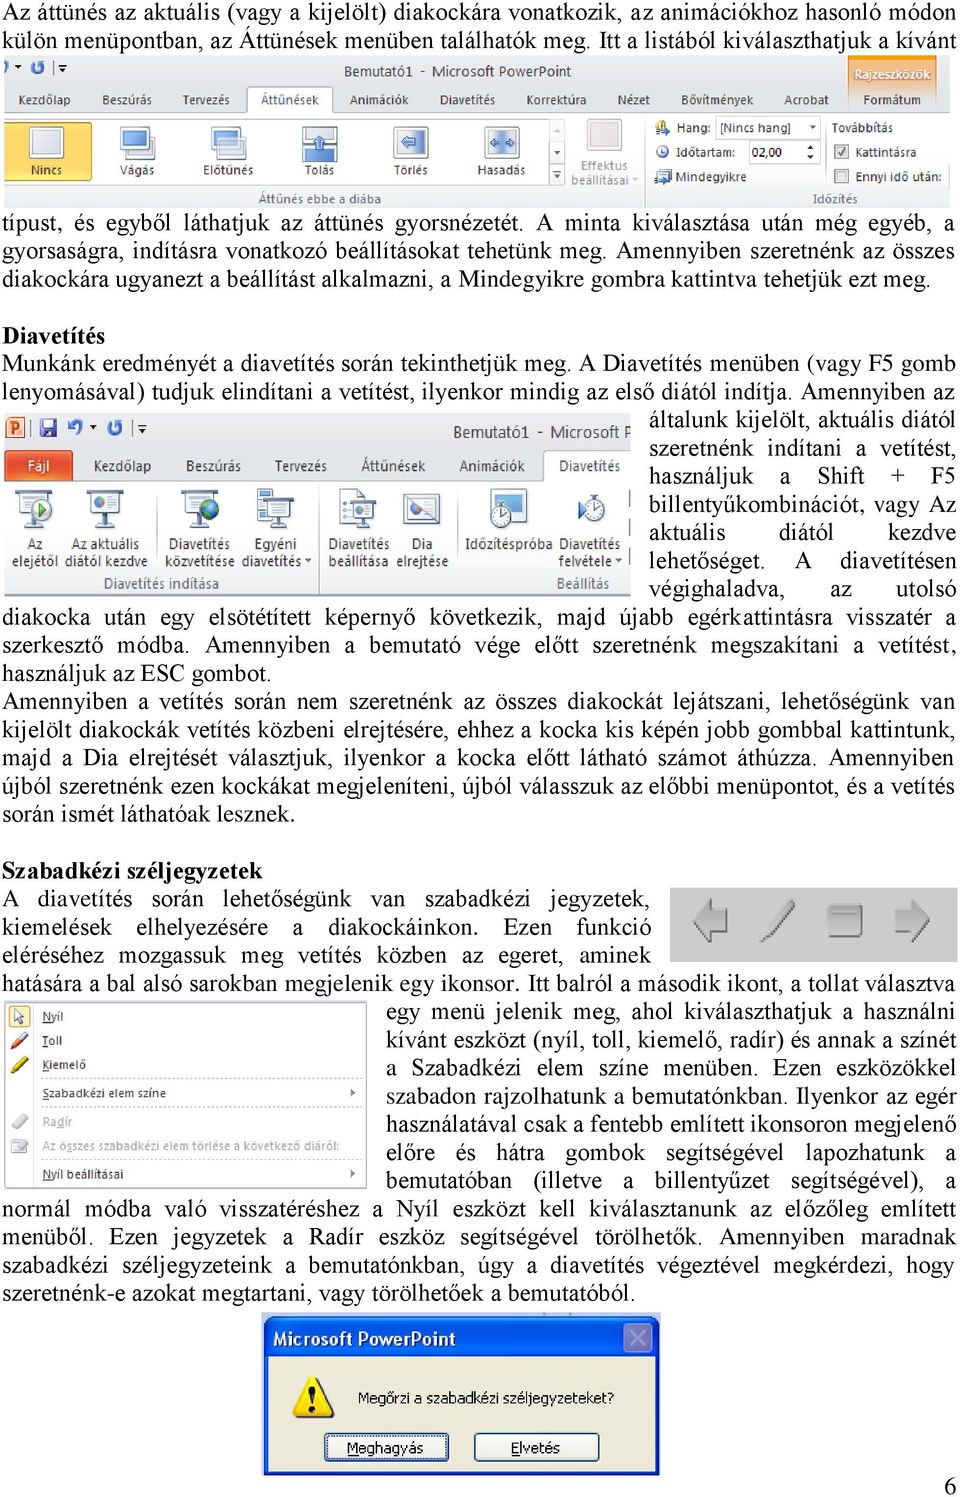 Microsoft Office PowerPoint 2010 alapok - PDF Ingyenes letöltés